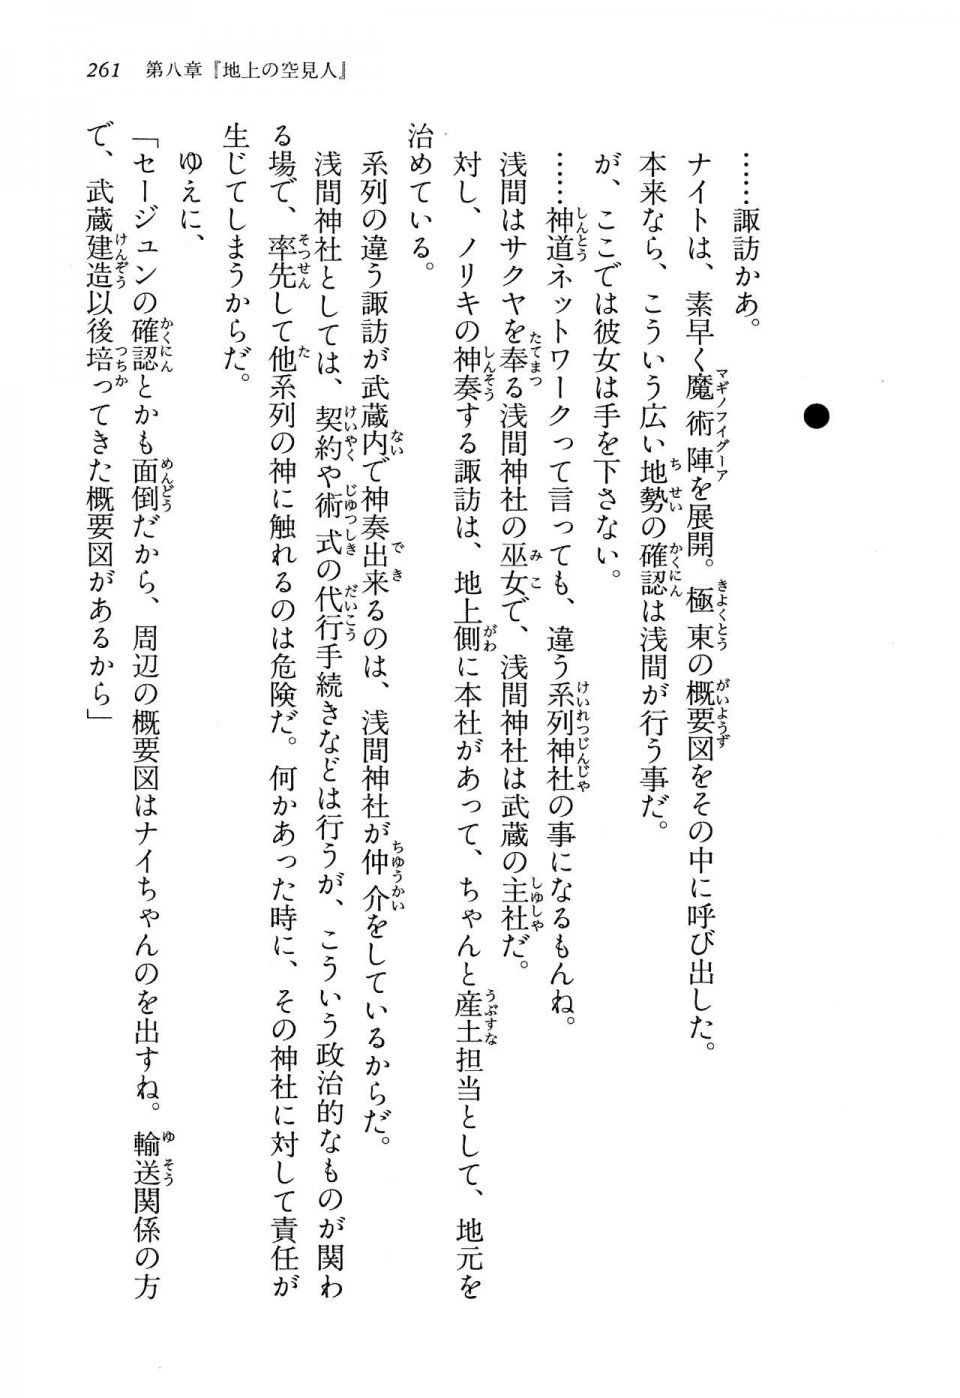 Kyoukai Senjou no Horizon LN Vol 13(6A) - Photo #261